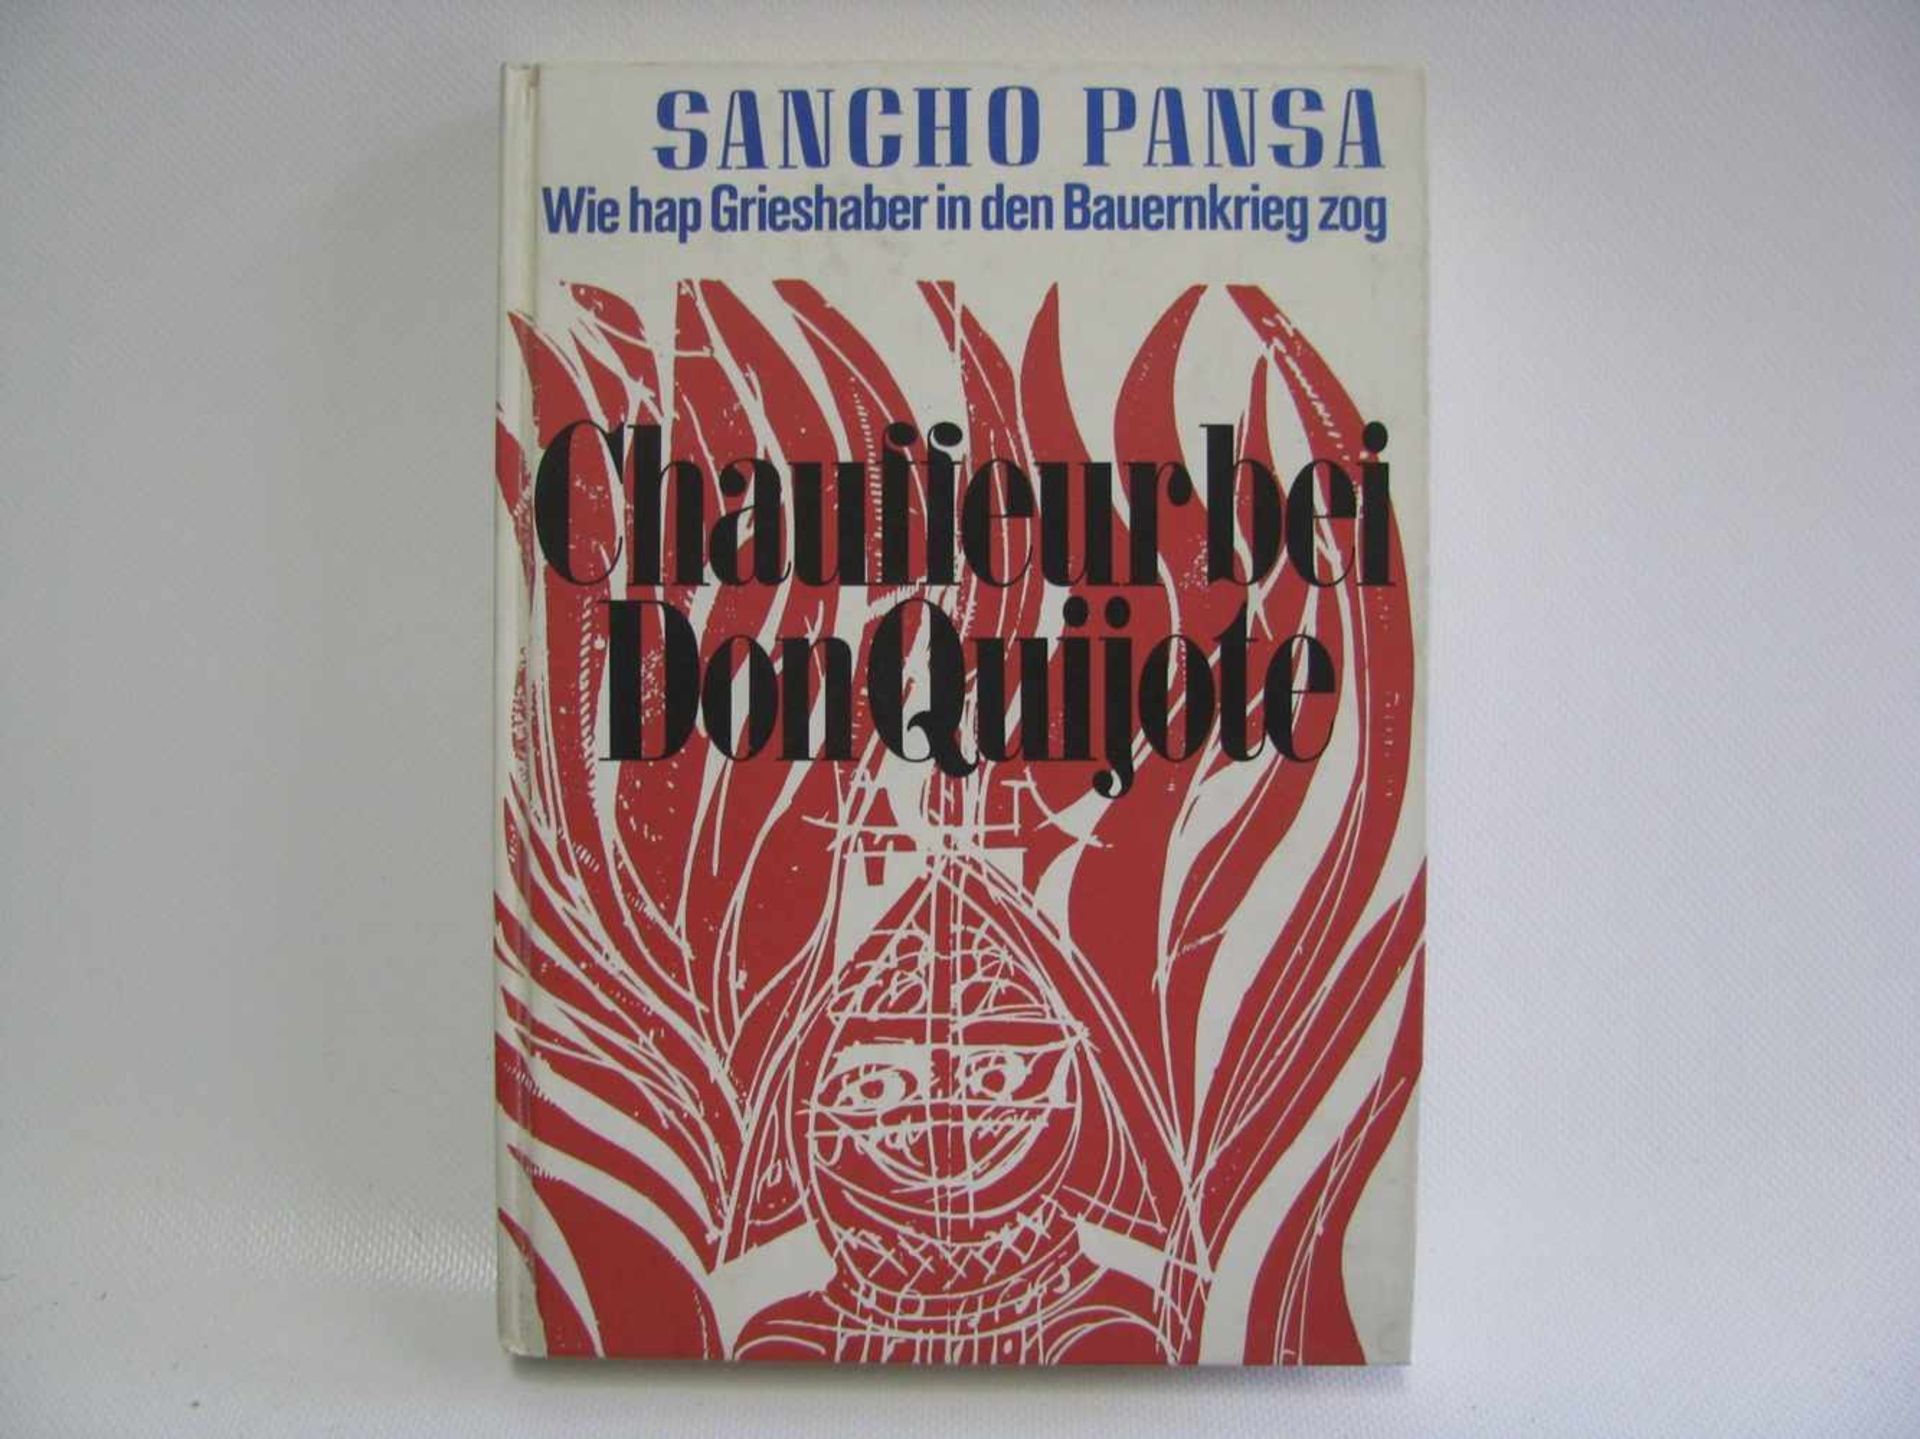 Grieshaber, HAP: Sancho Pansa. Chaffeur bei Don Quijote. Wie hap Grieshaber in den Bauernkrieg